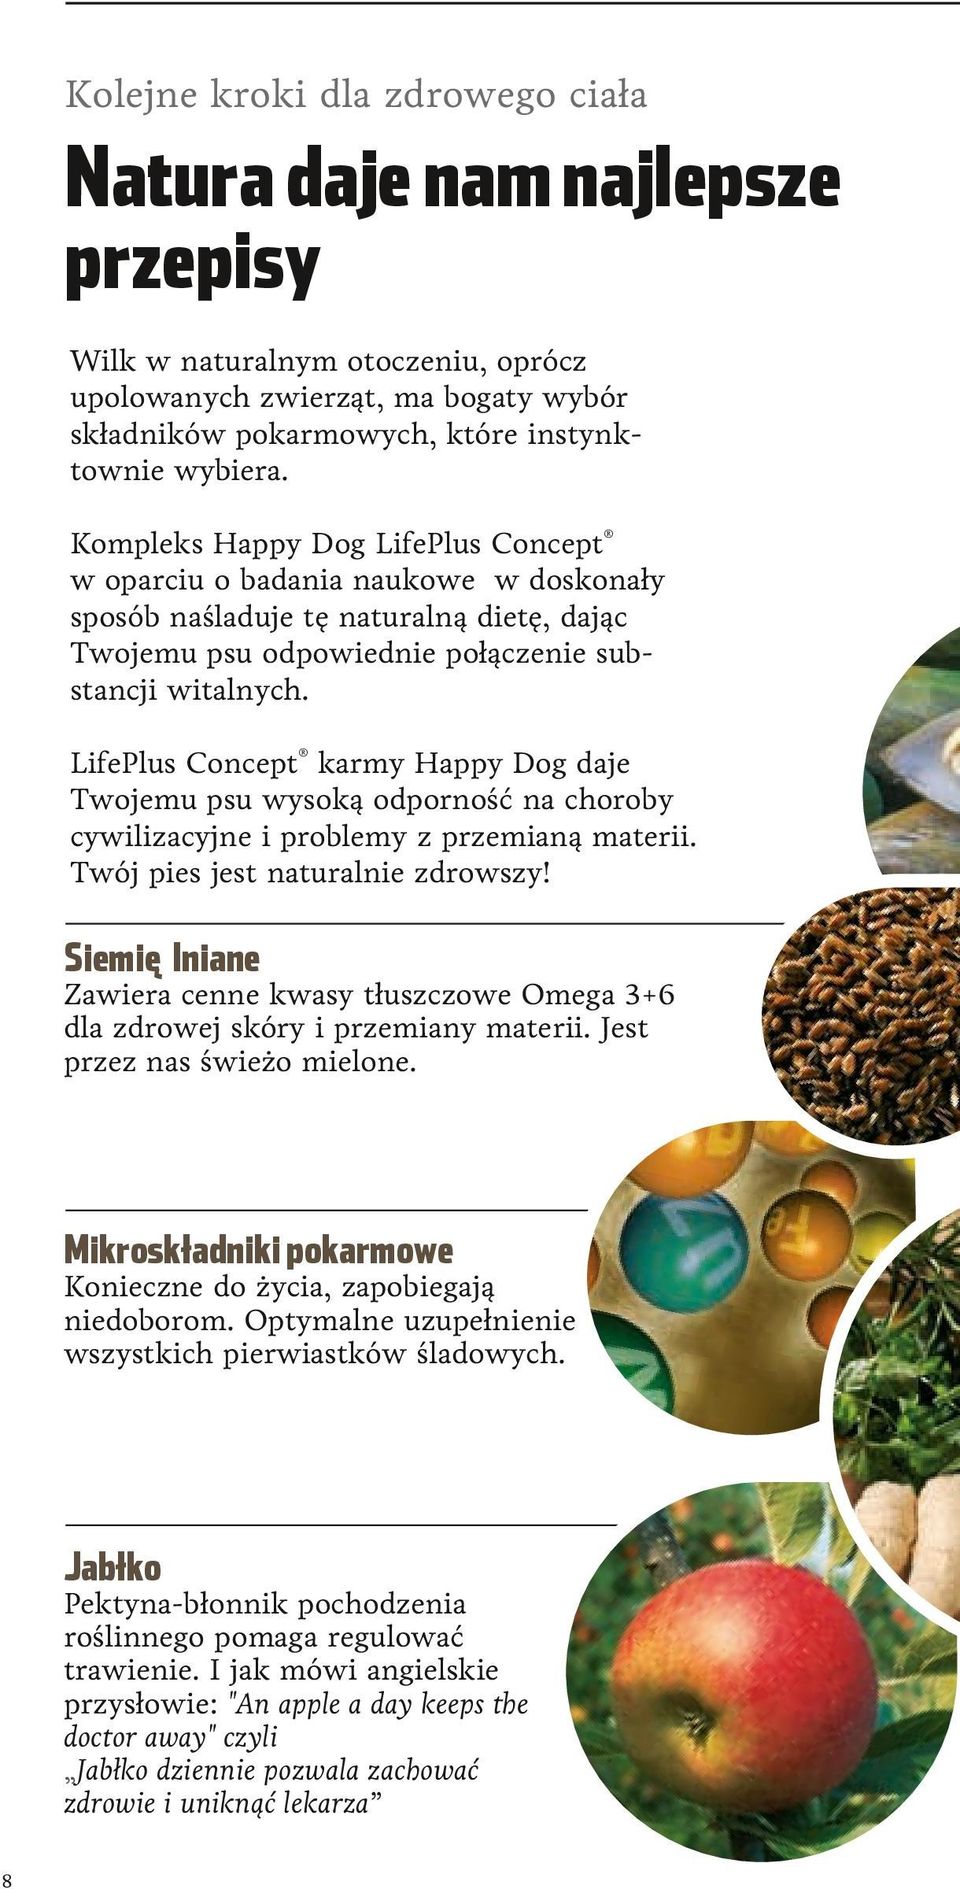 LifePlus Concept karmy Happy Dog daje Twojemu psu wysoką odporność na choroby cywilizacyjne i problemy z przemianą materii. Twój pies jest naturalnie zdrowszy!